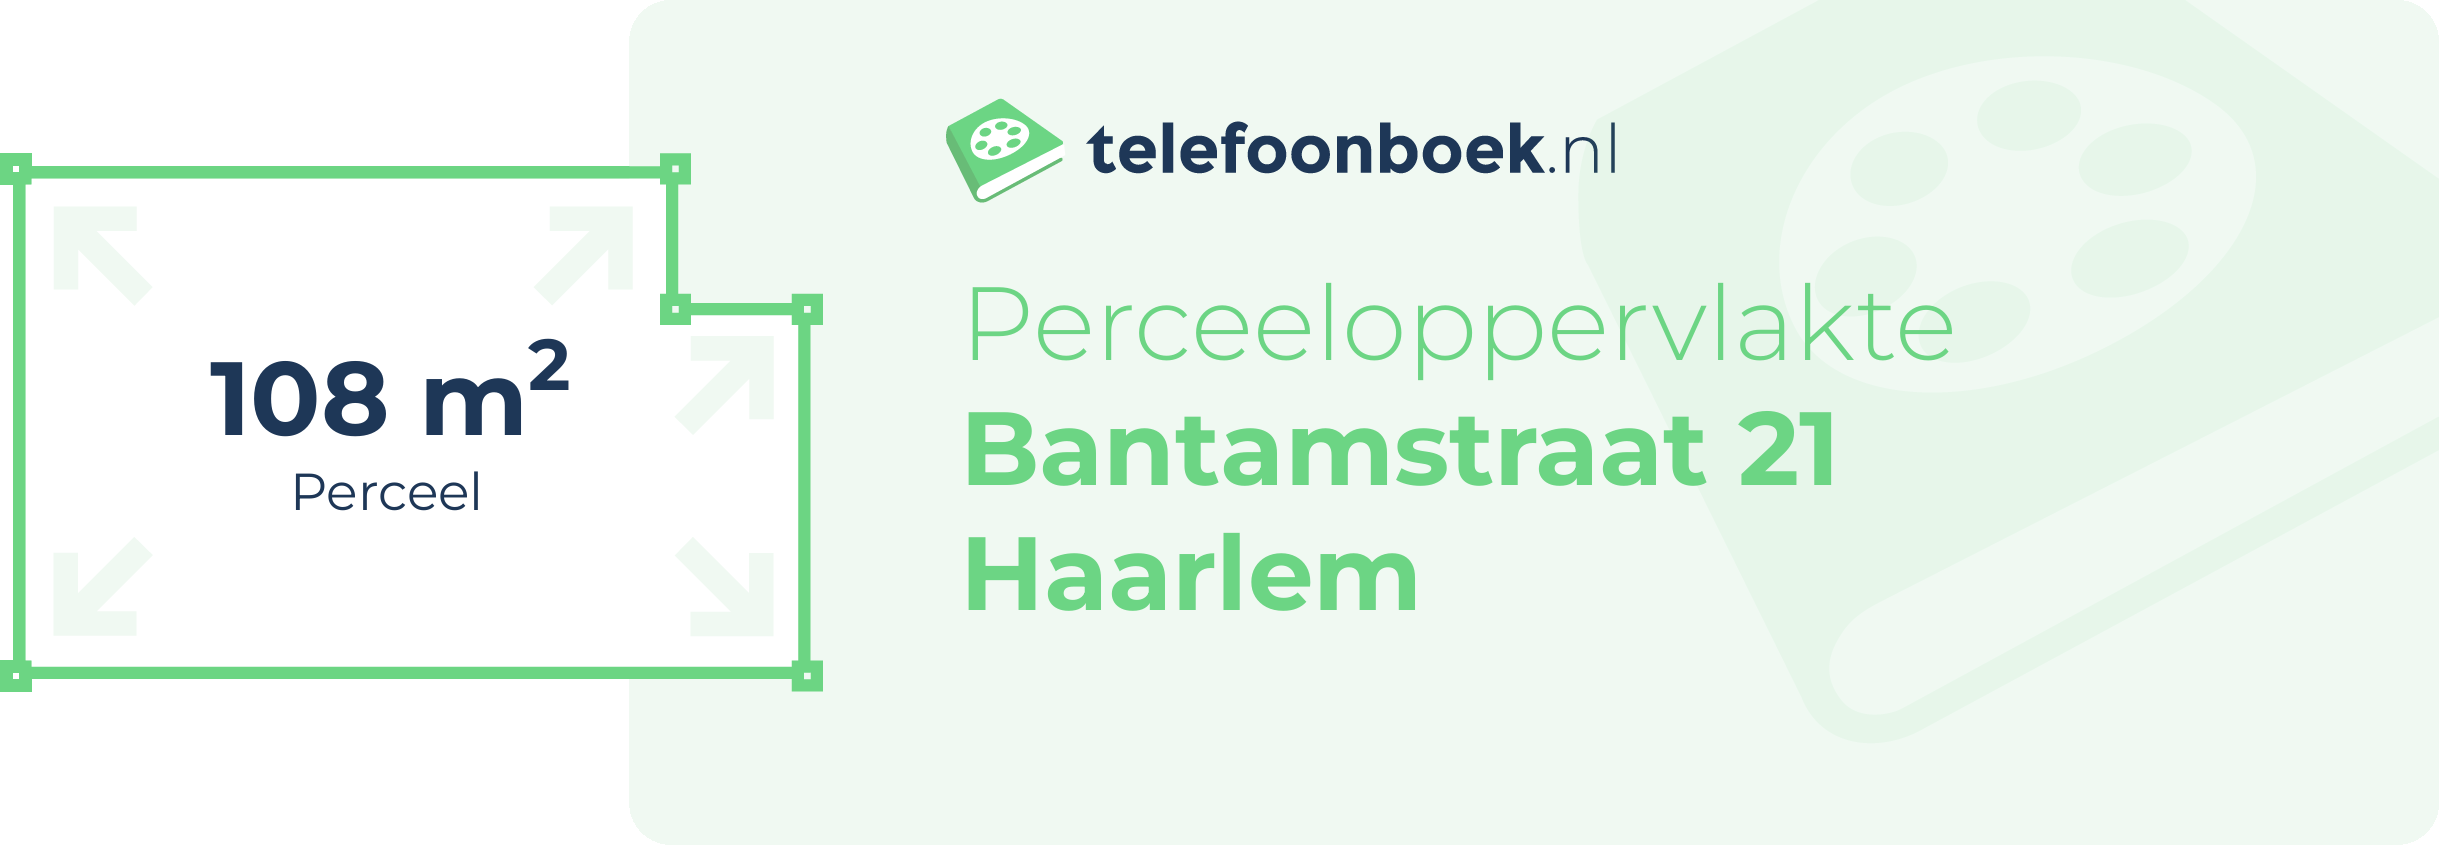 Perceeloppervlakte Bantamstraat 21 Haarlem